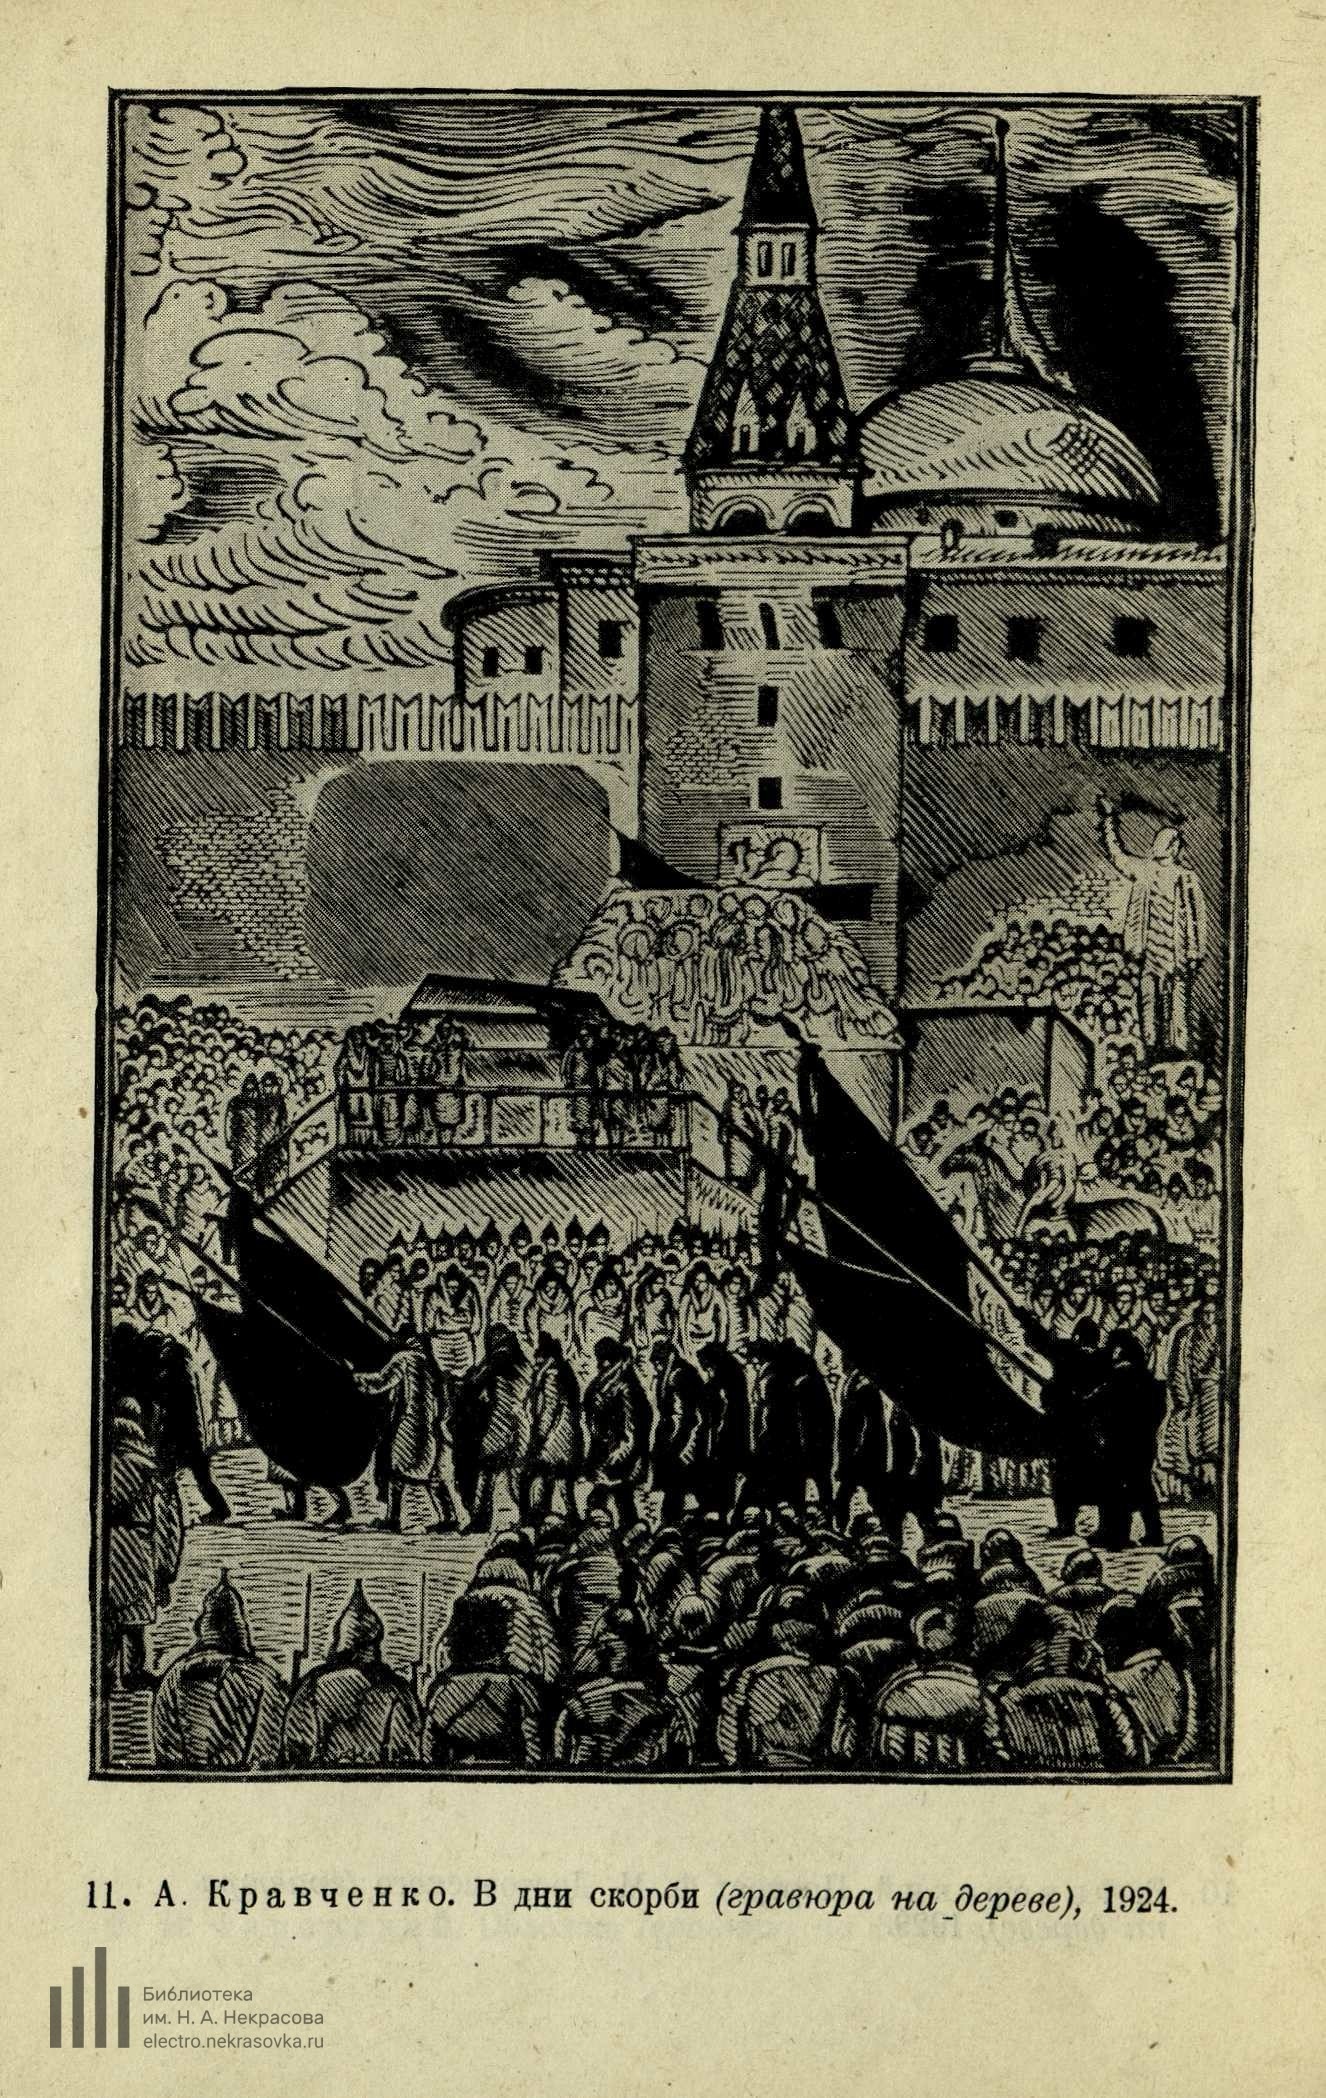 А. Кравченко. В дни скорби (гравюра на дереве), 1924.